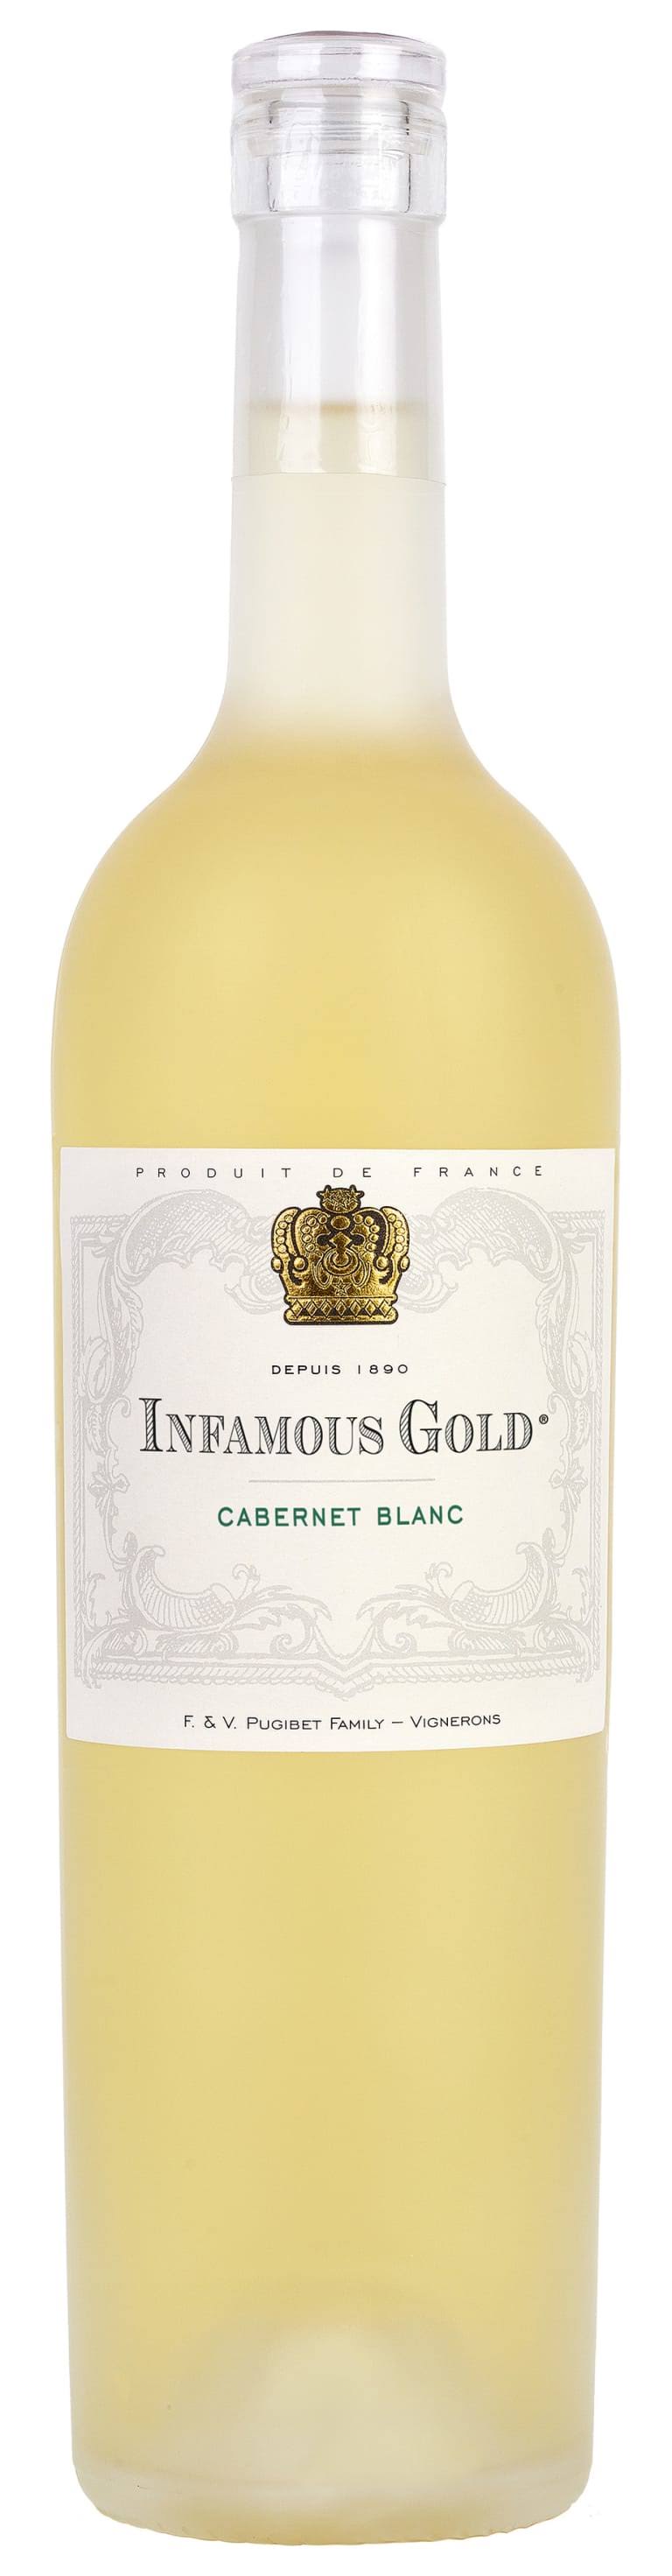 Infamous Gold Cabernet Blanc 2019 750ml